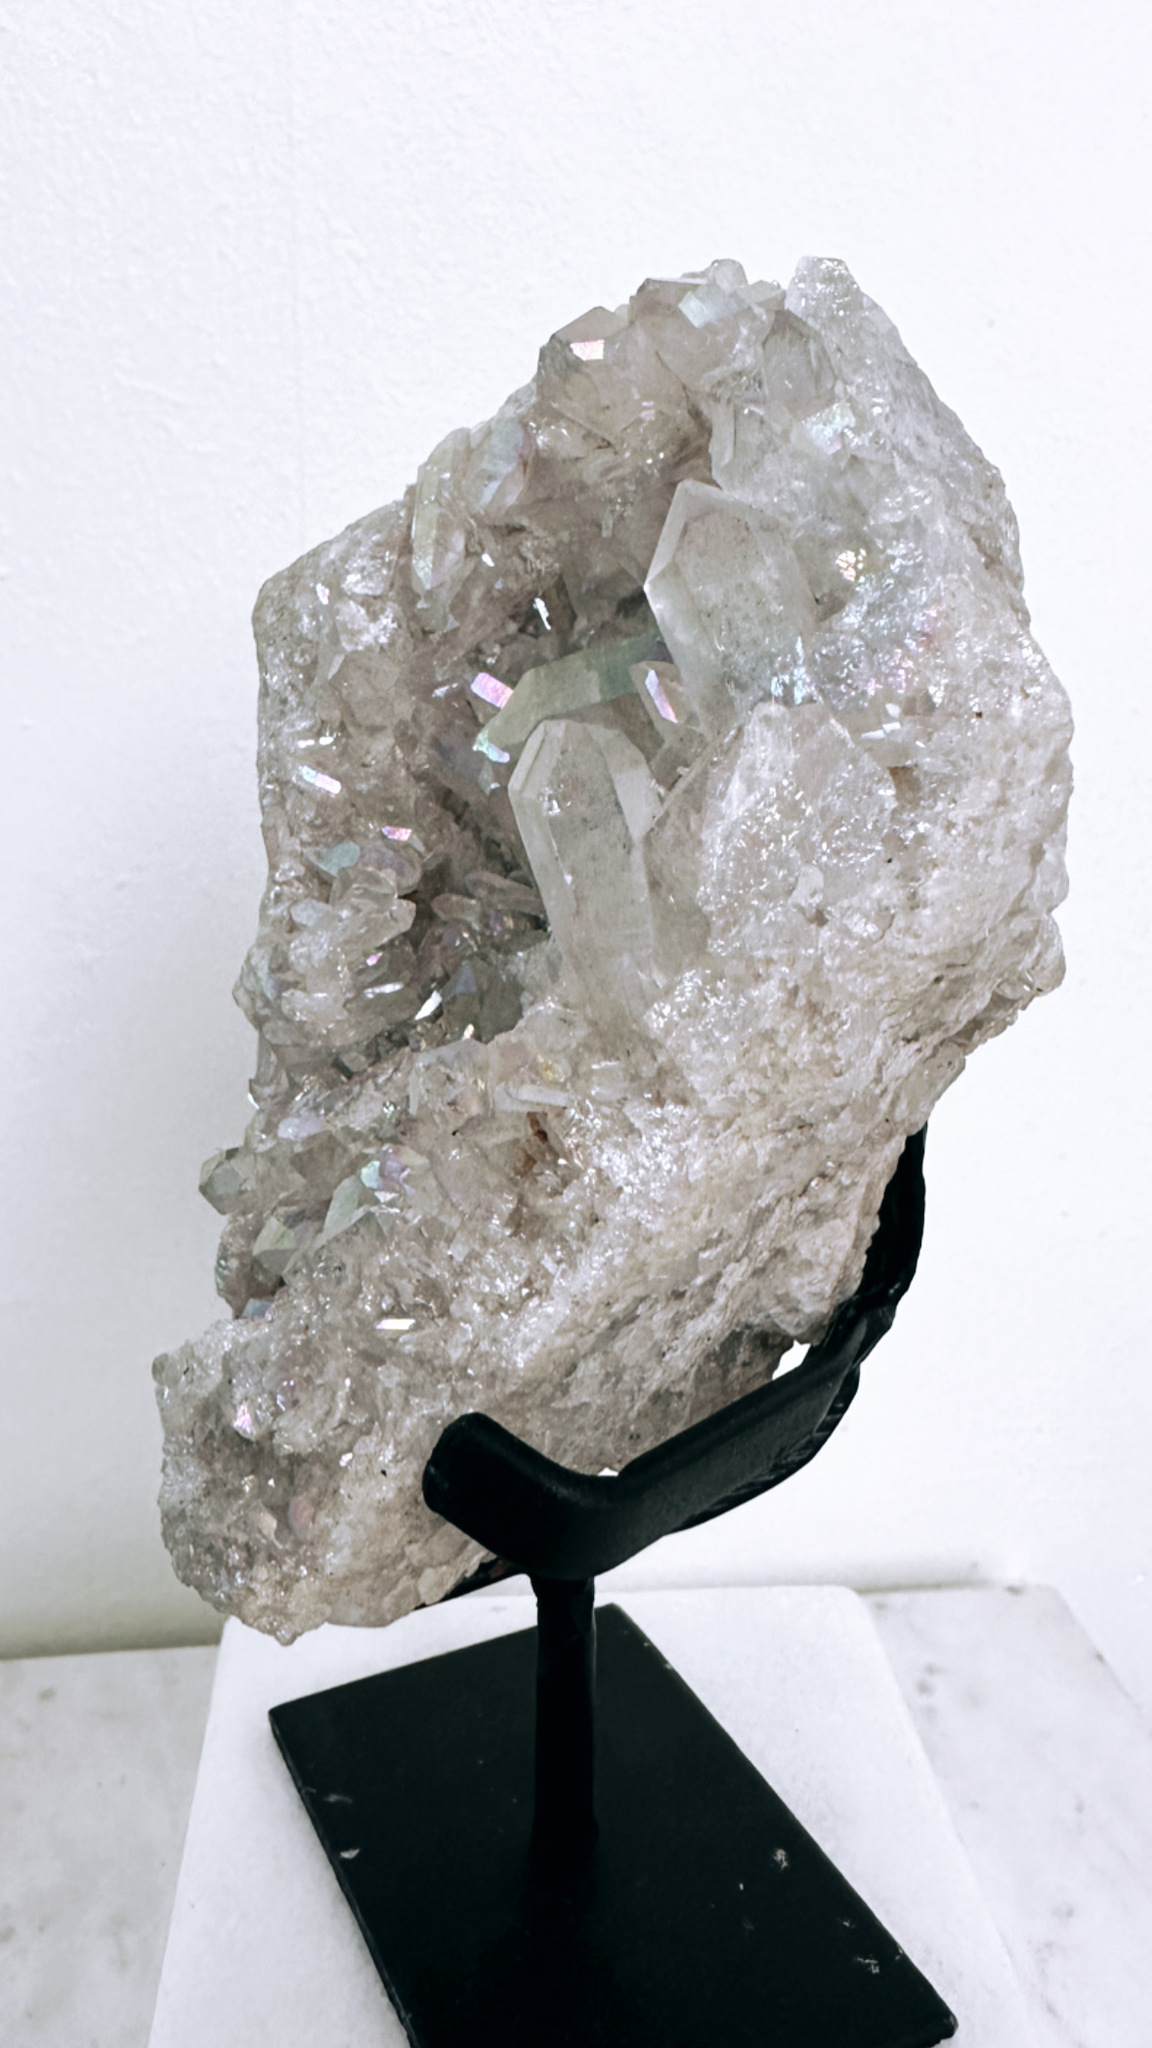 Bergkristall med aura, kluster på ställning